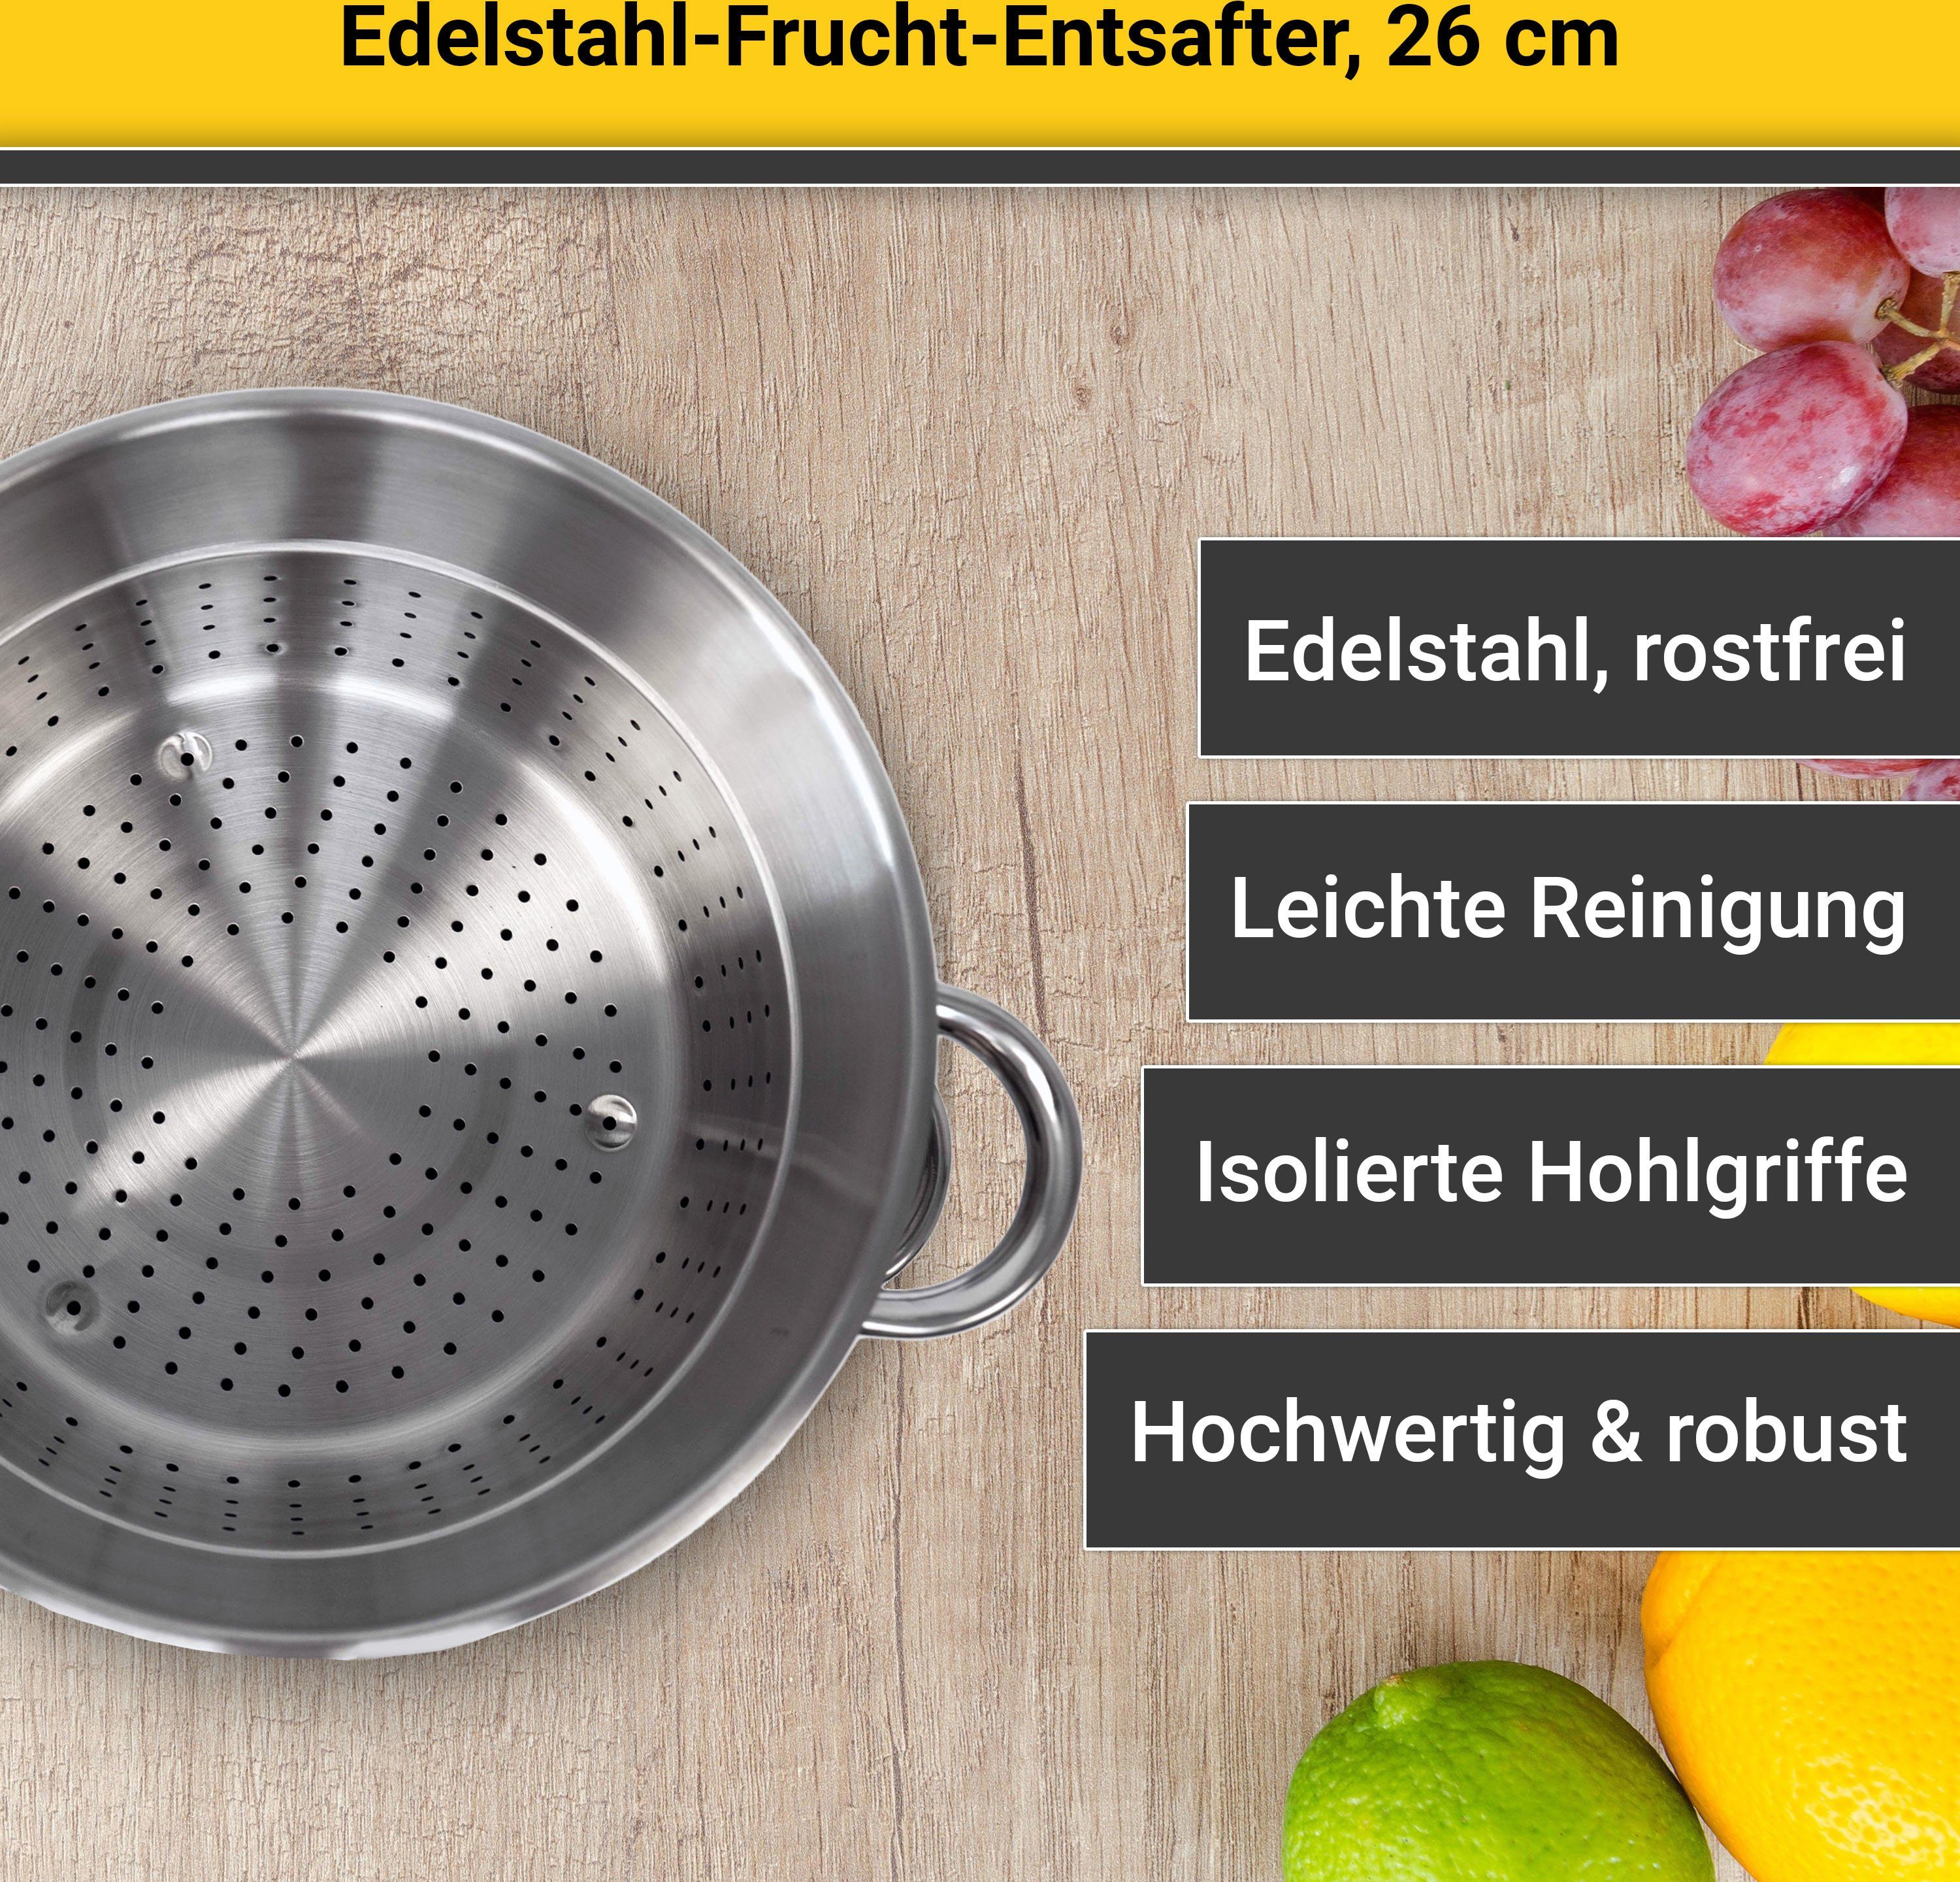 Krüger Einkochtopf, Fruchtentsafter, Edelstahl, Induktion